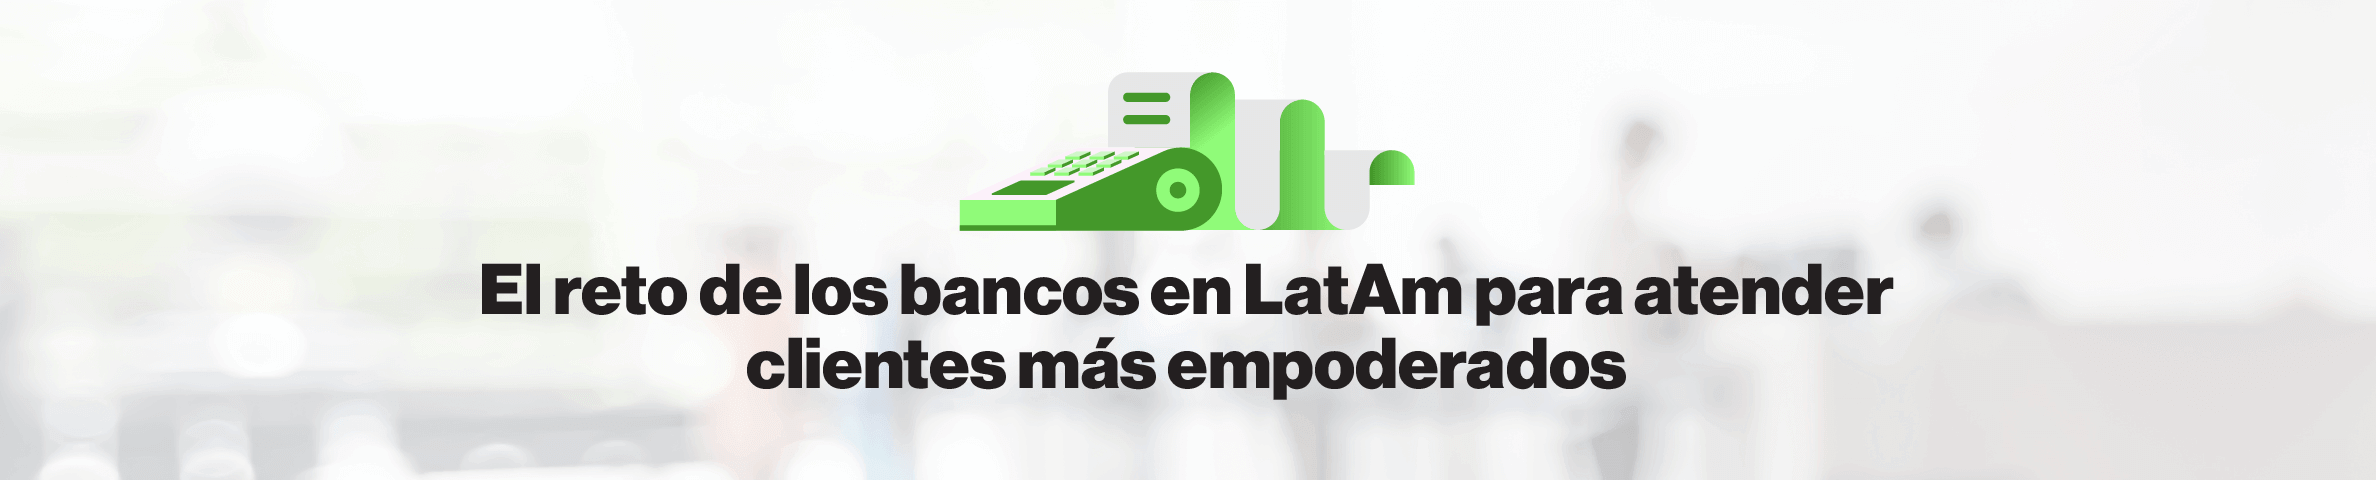 El reto de los bancos en LatAm para atender clientes más empoderados